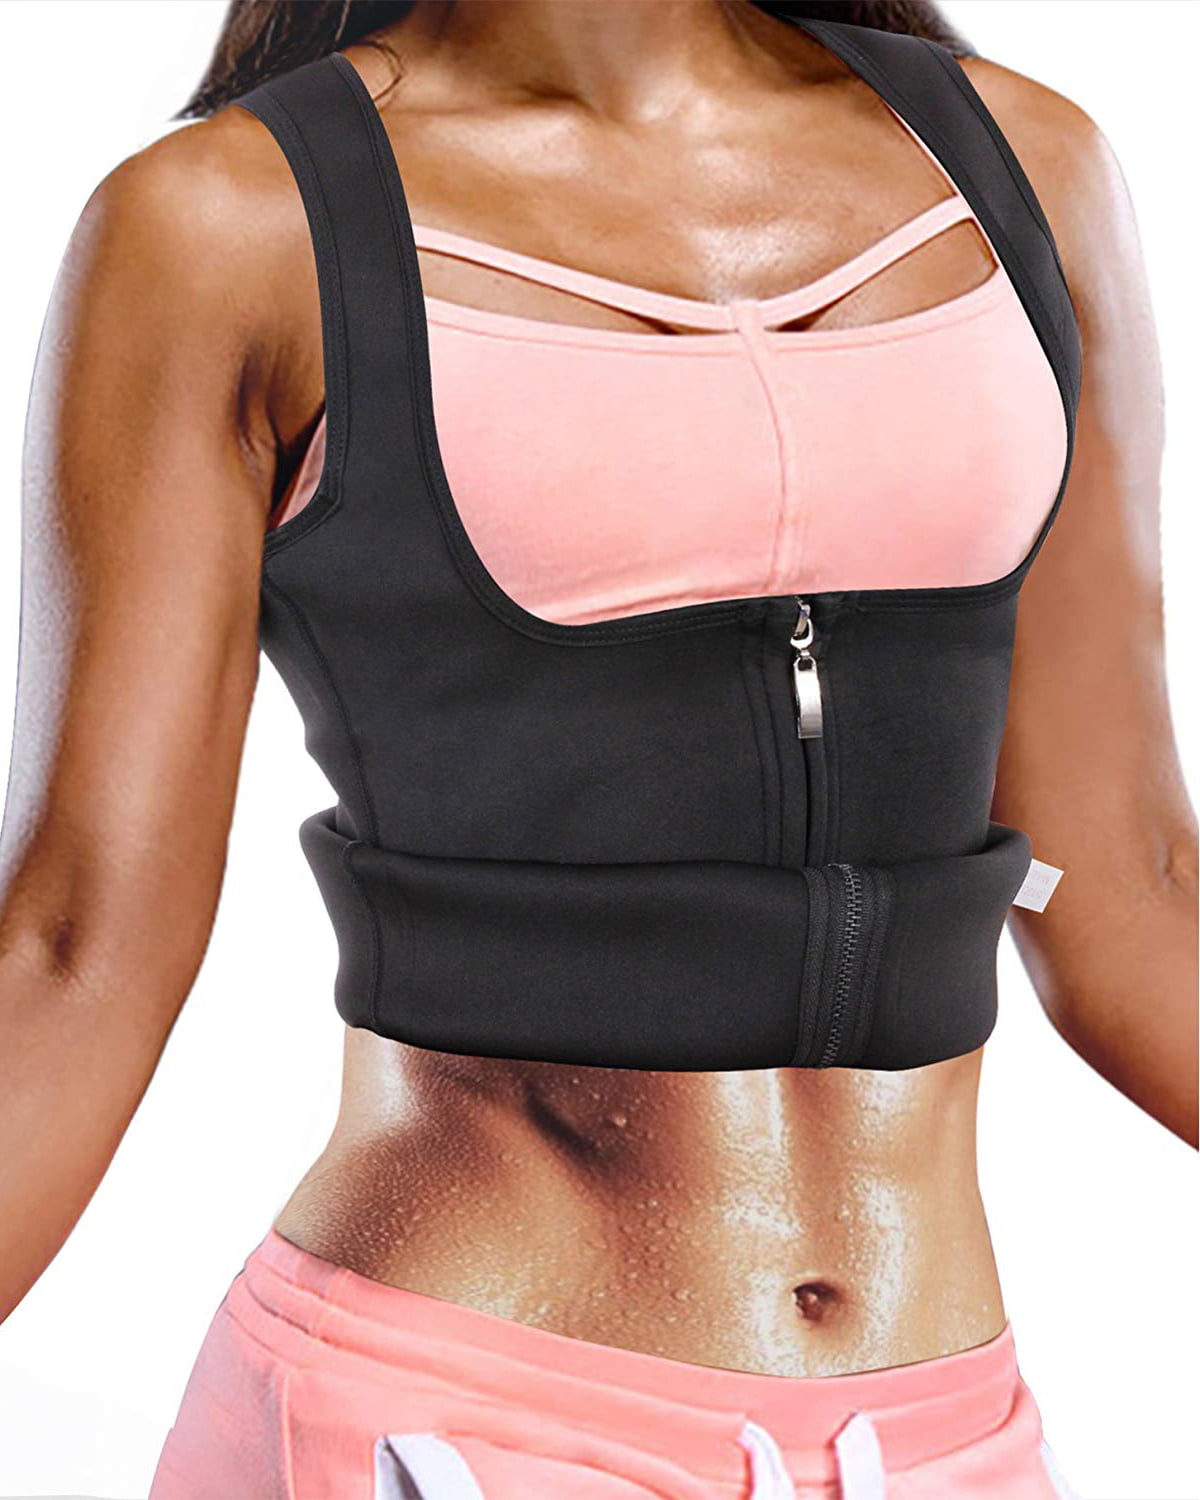 Women's Sweat Sauna Vest Body Shaper Slim Corsets Neoprene Zipper Waist Trainer 